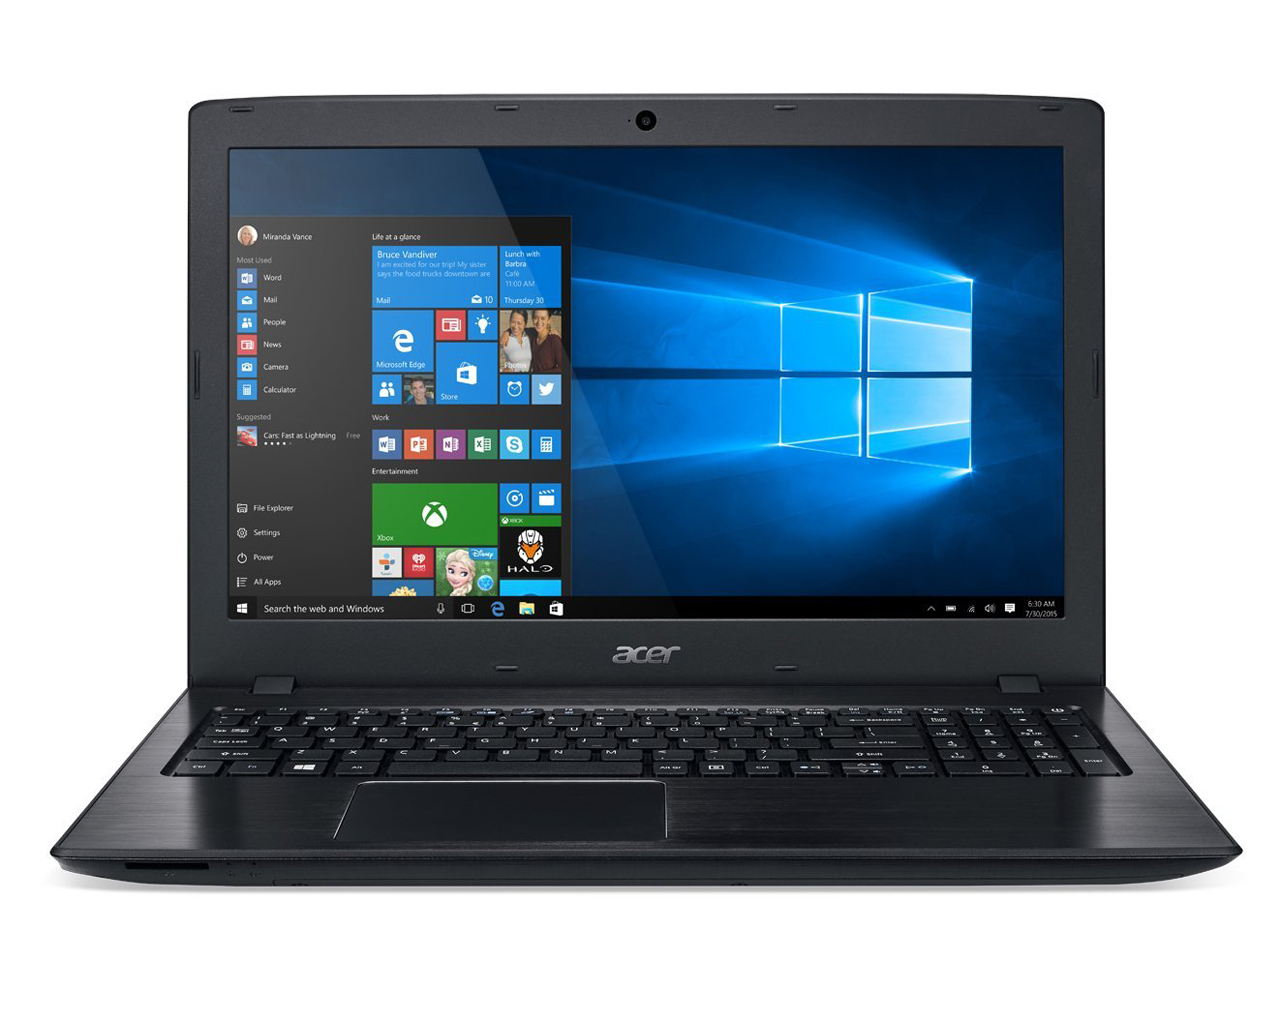 Acer Aspire E15 kopen tijdens black friday vergelijk hier